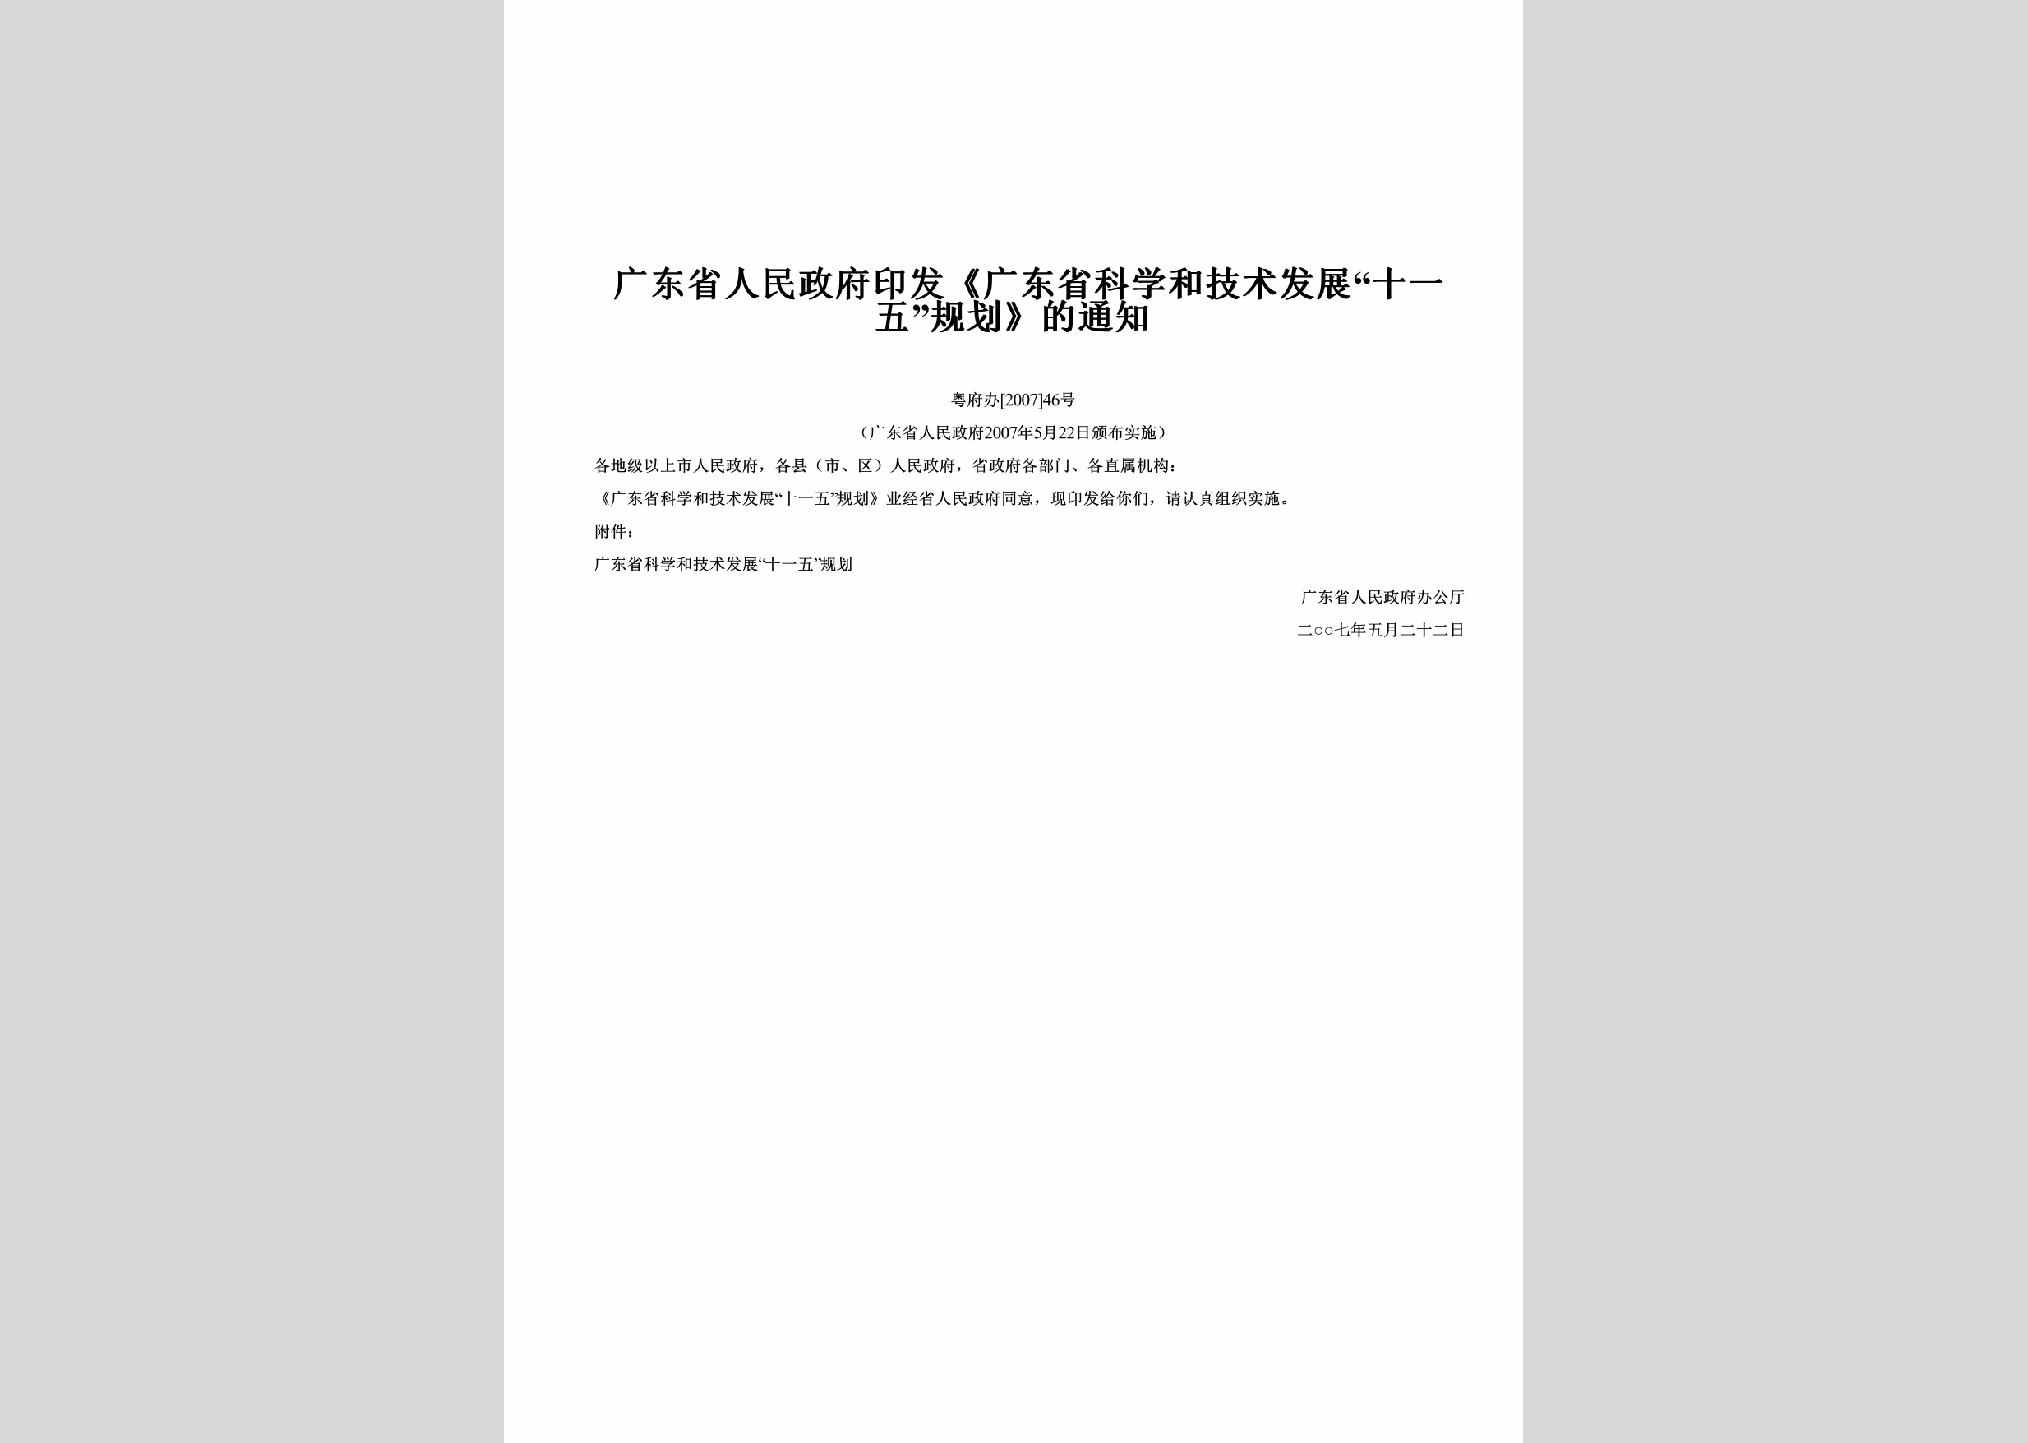 粤府办[2007]46号：印发《广东省科学和技术发展“十一五”规划》的通知